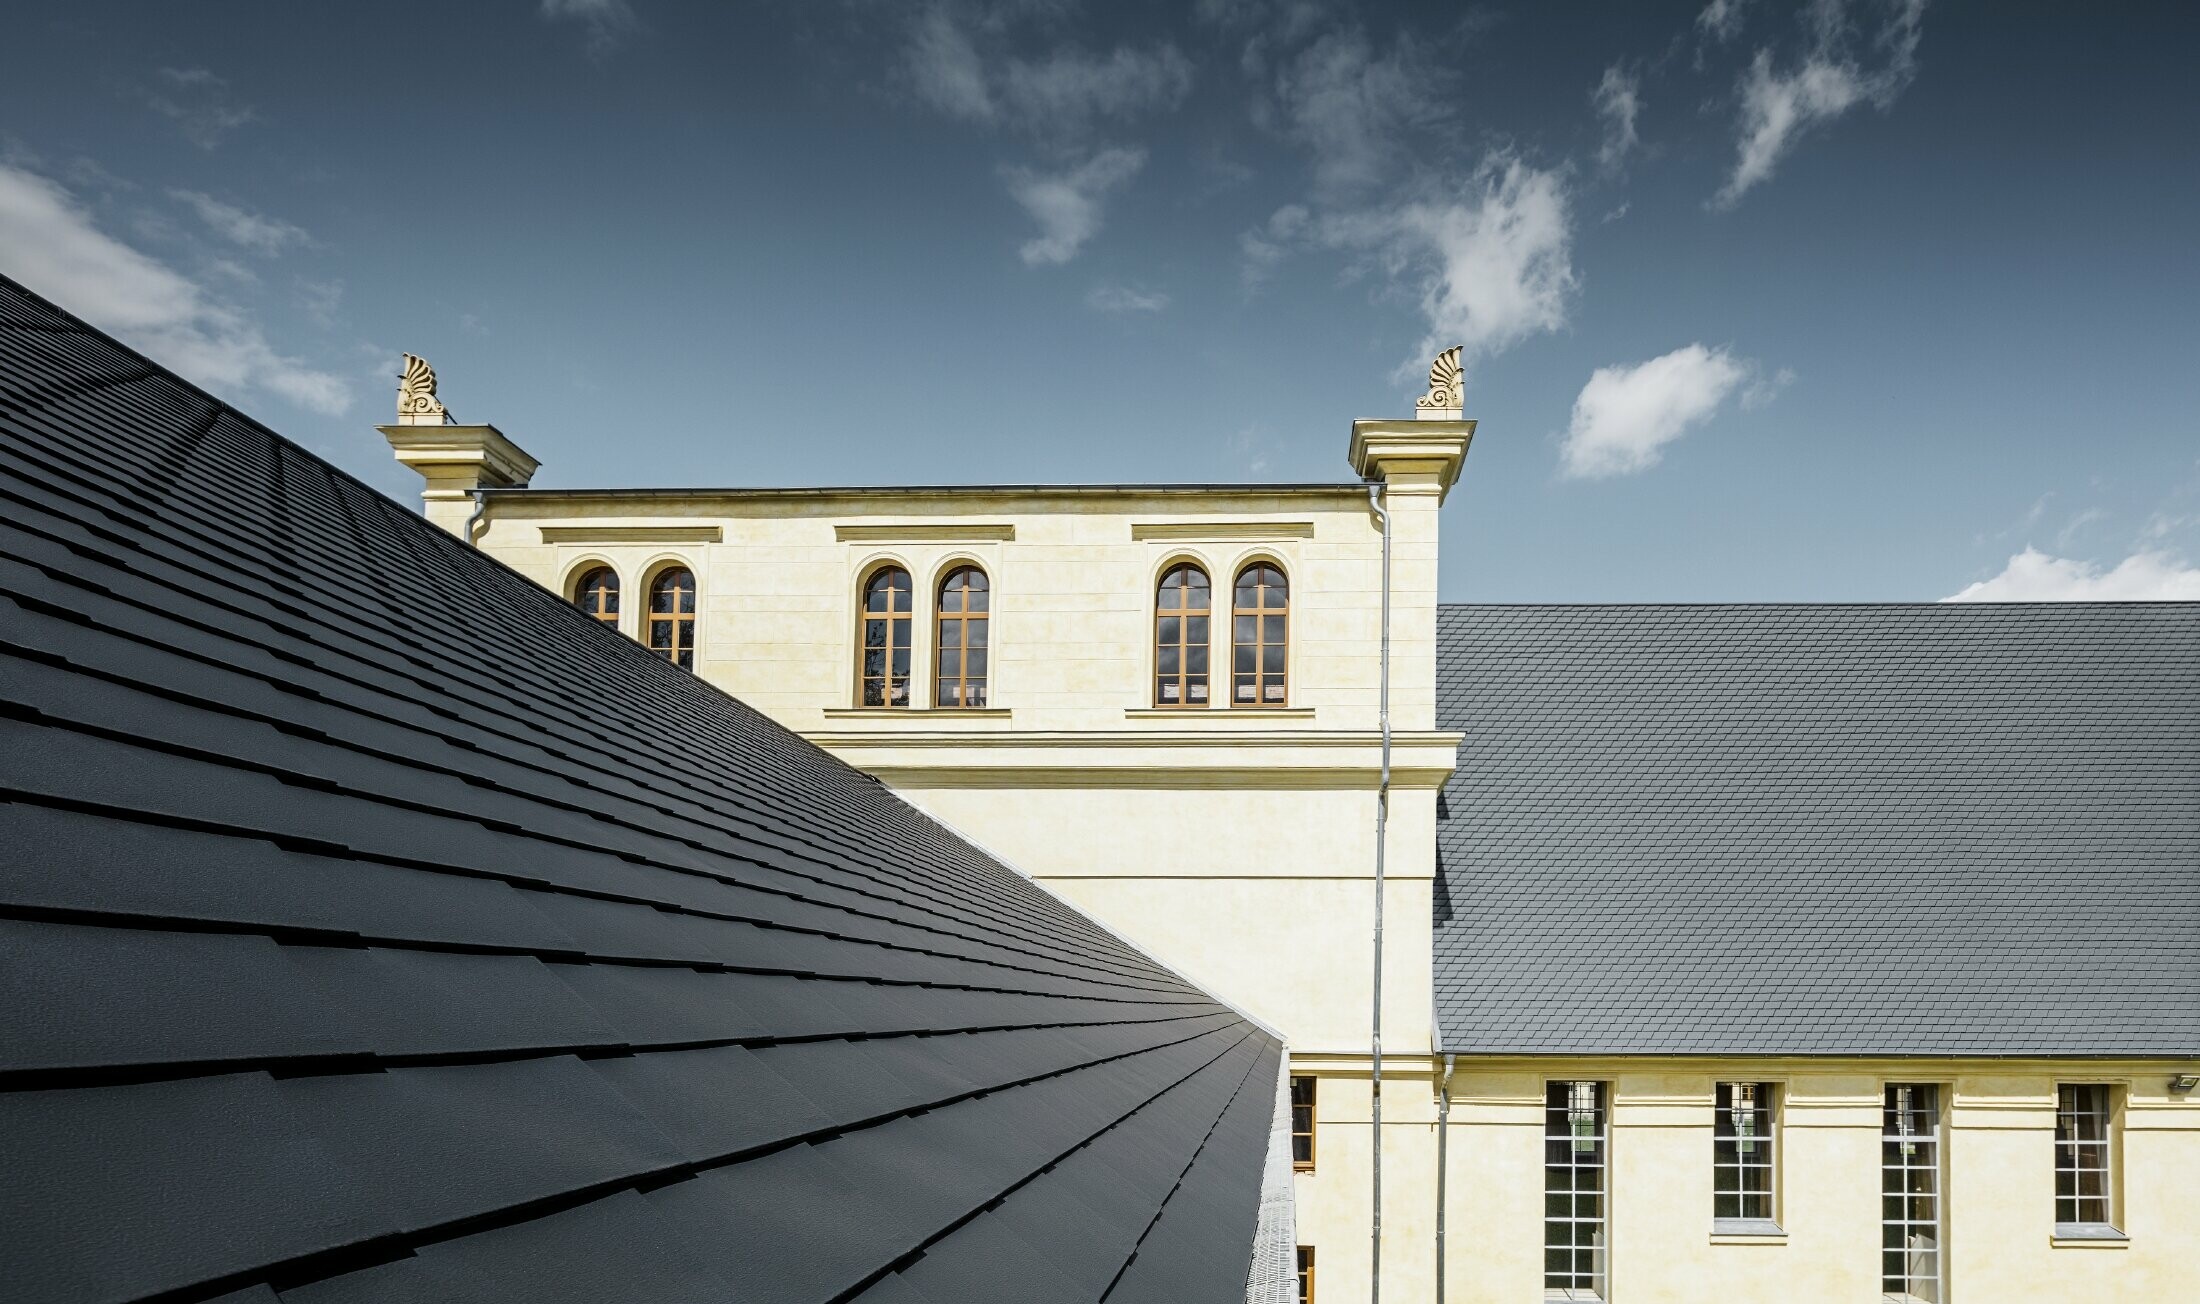 Detailaufnahme des neuen Daches des Marstalls in Basedow; Das Dach wurde saniert mit der PREFA Dachschindel in Anthrazit.